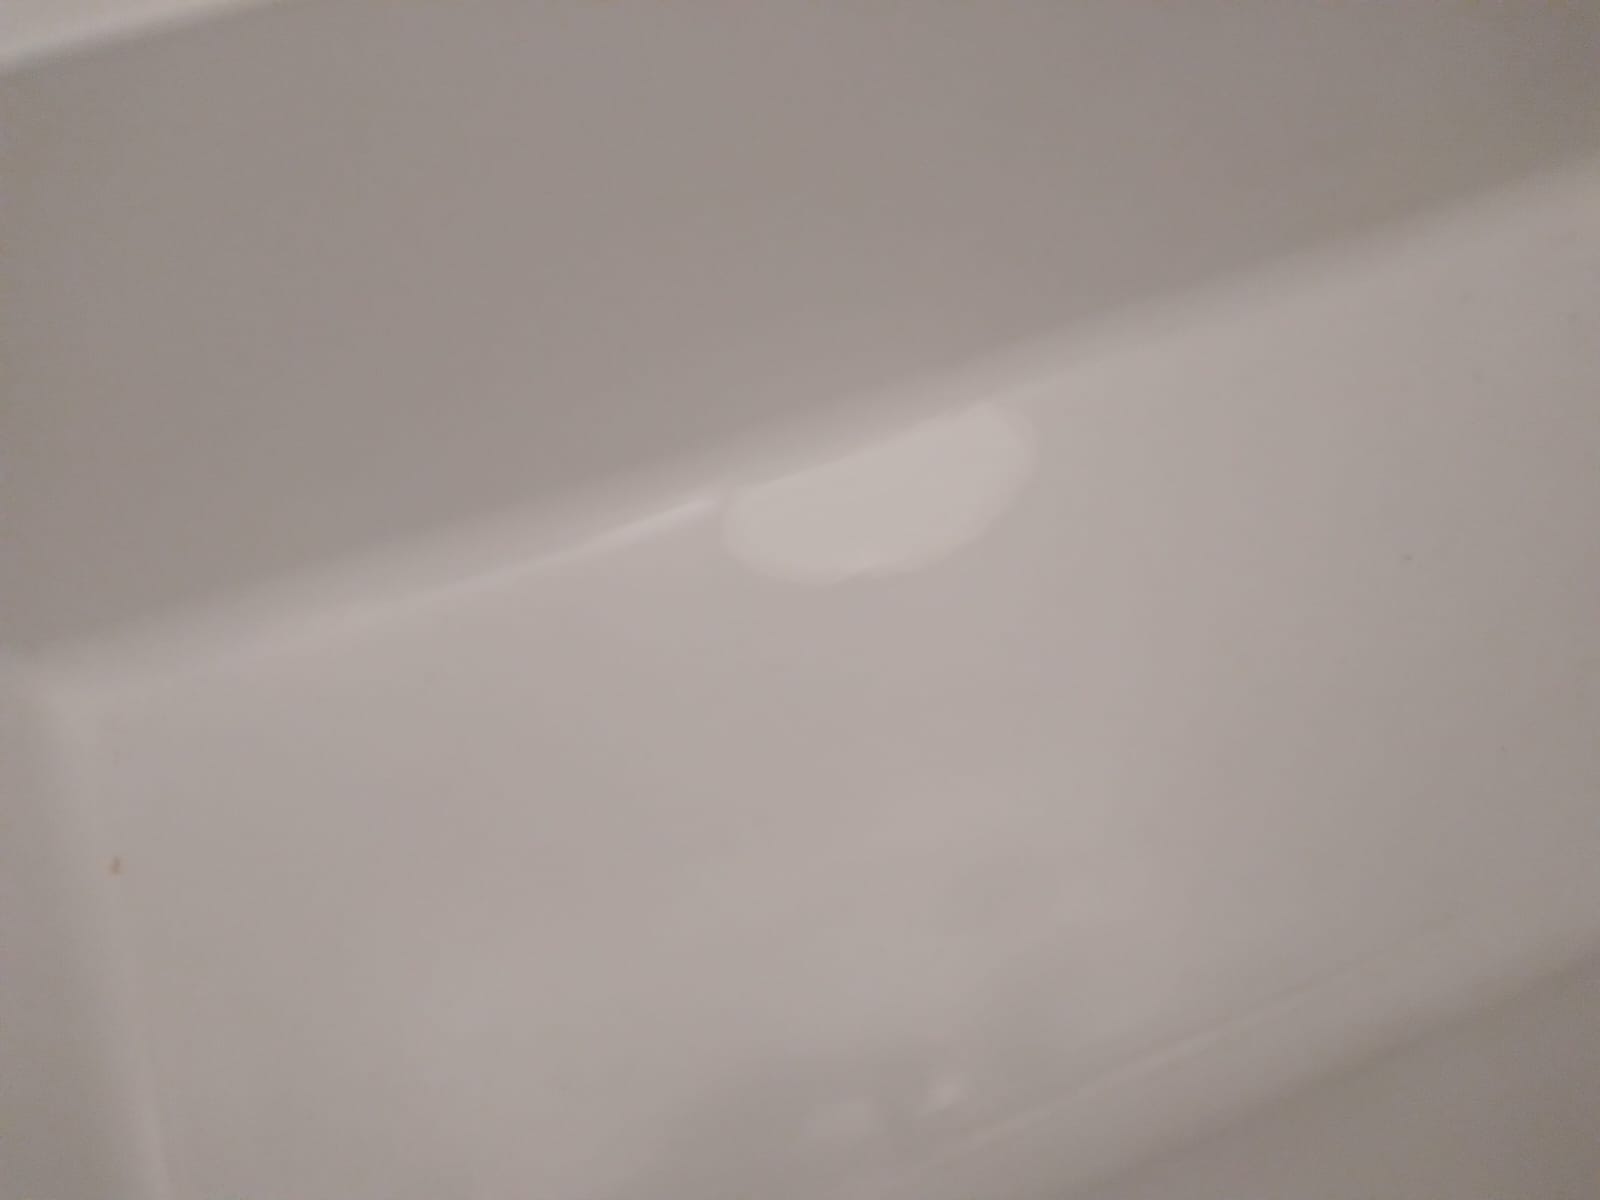 תיקון שבר באמבטיה אקרילית